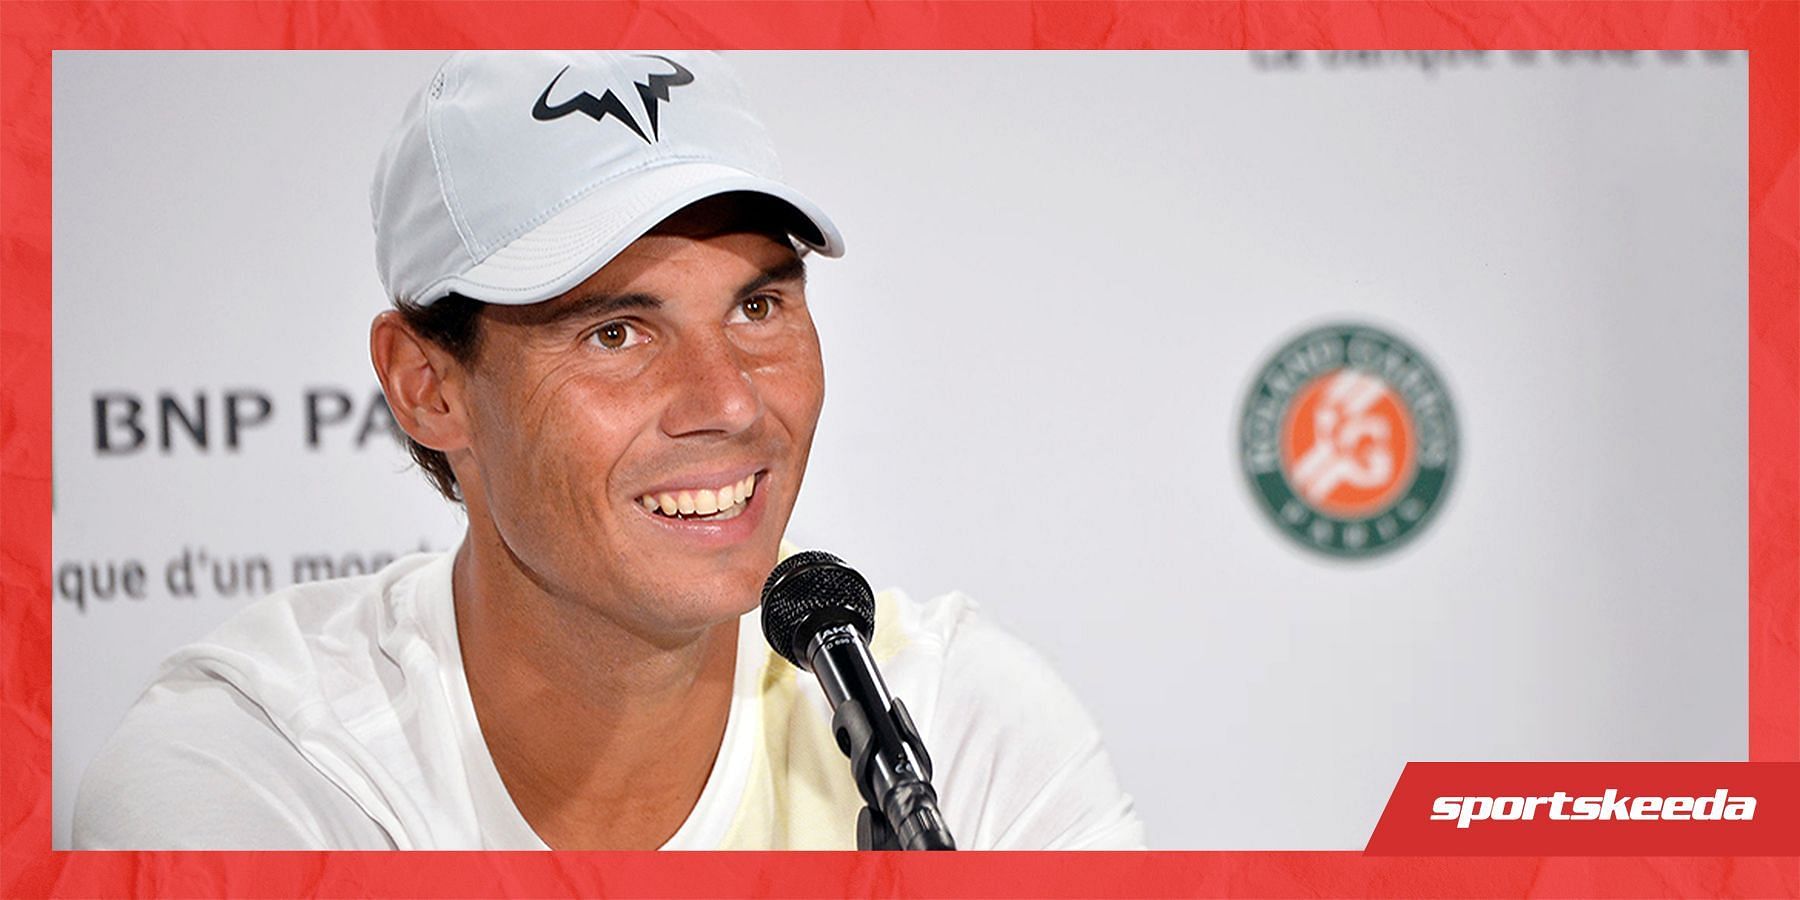 Rafael Nadal has won 14 Roland Garros titles.